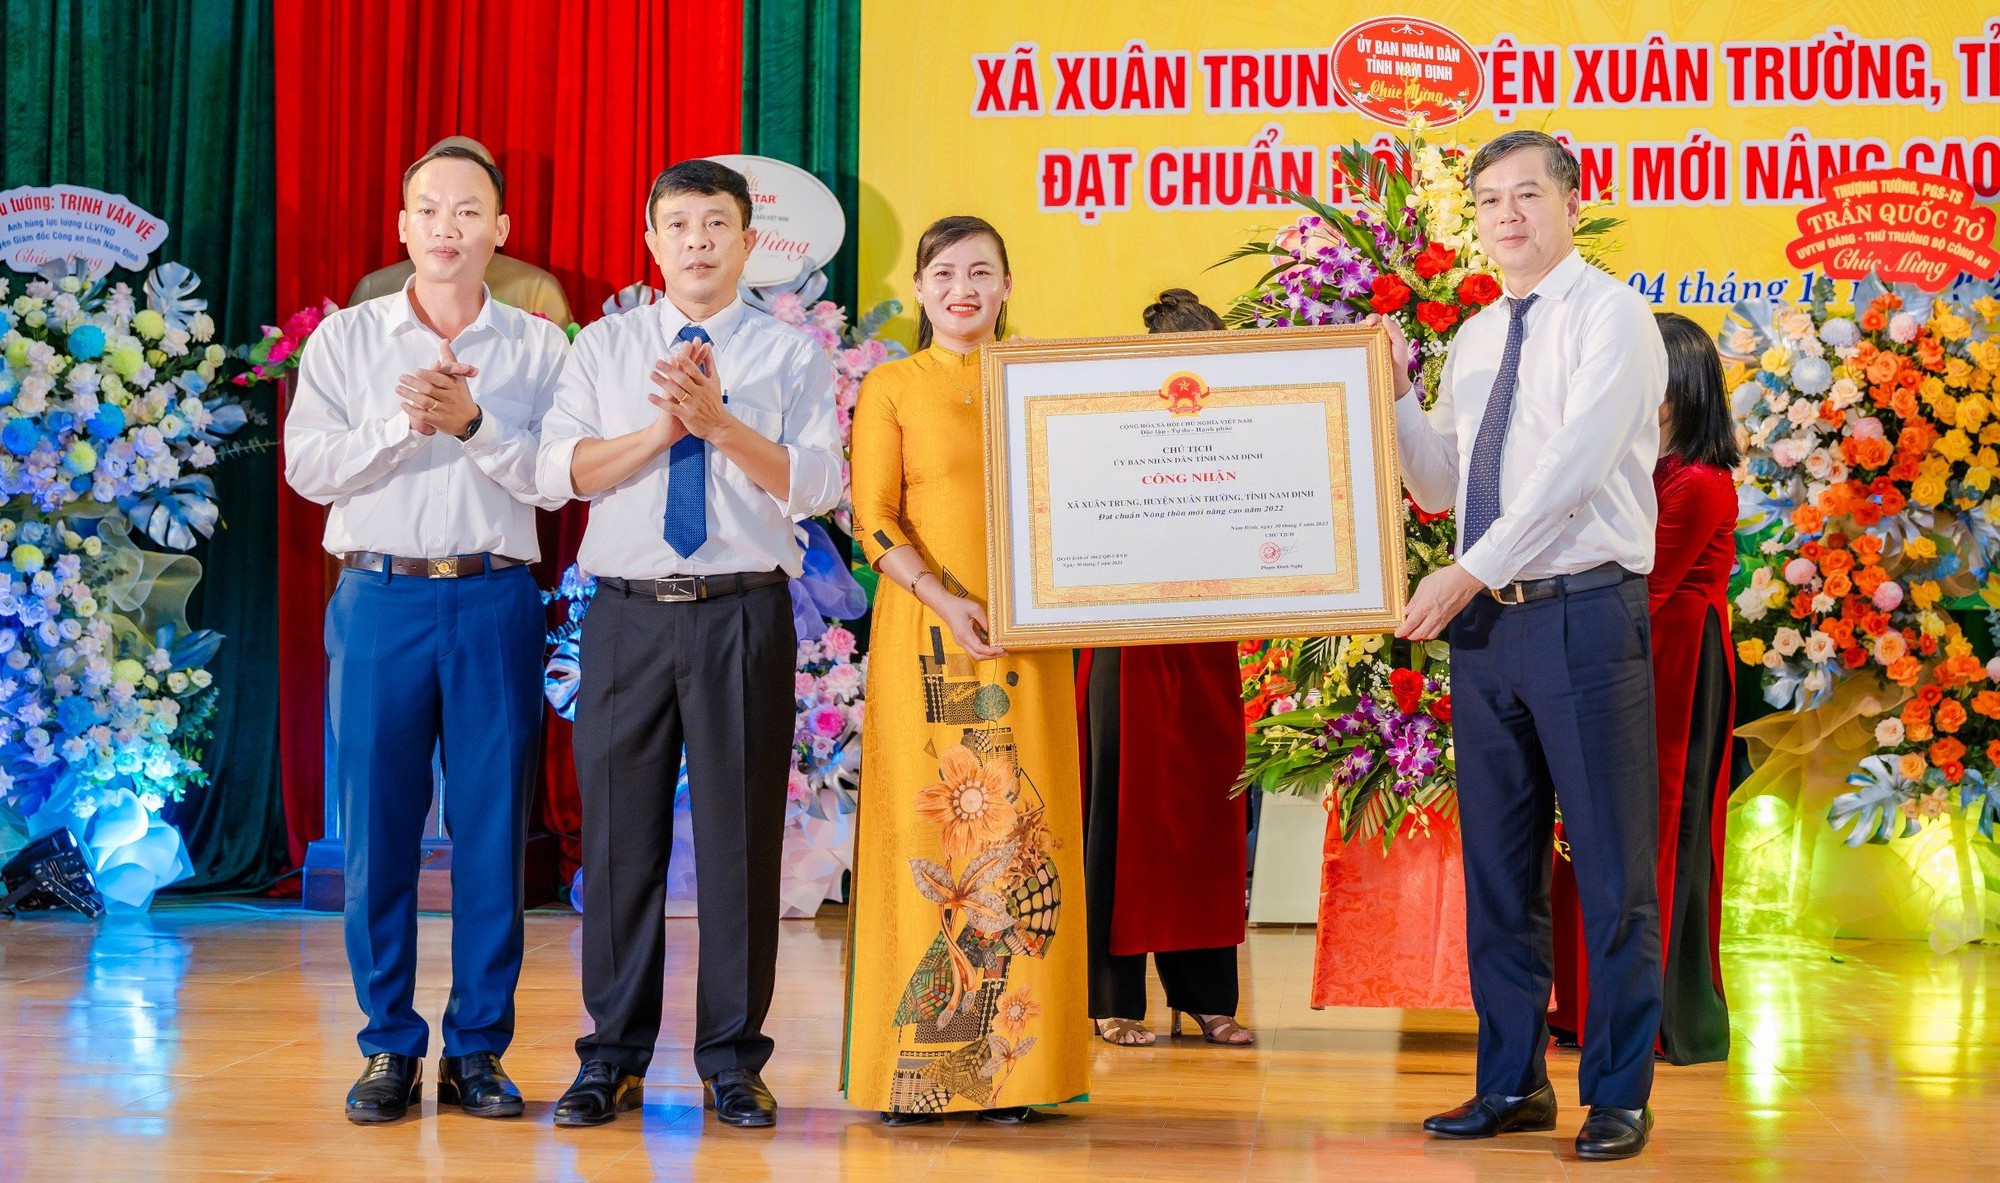 Nam Định: Xã Xuân Trung đón nhận Bằng nông thôn mới nâng cao năm 2022 - Ảnh 1.